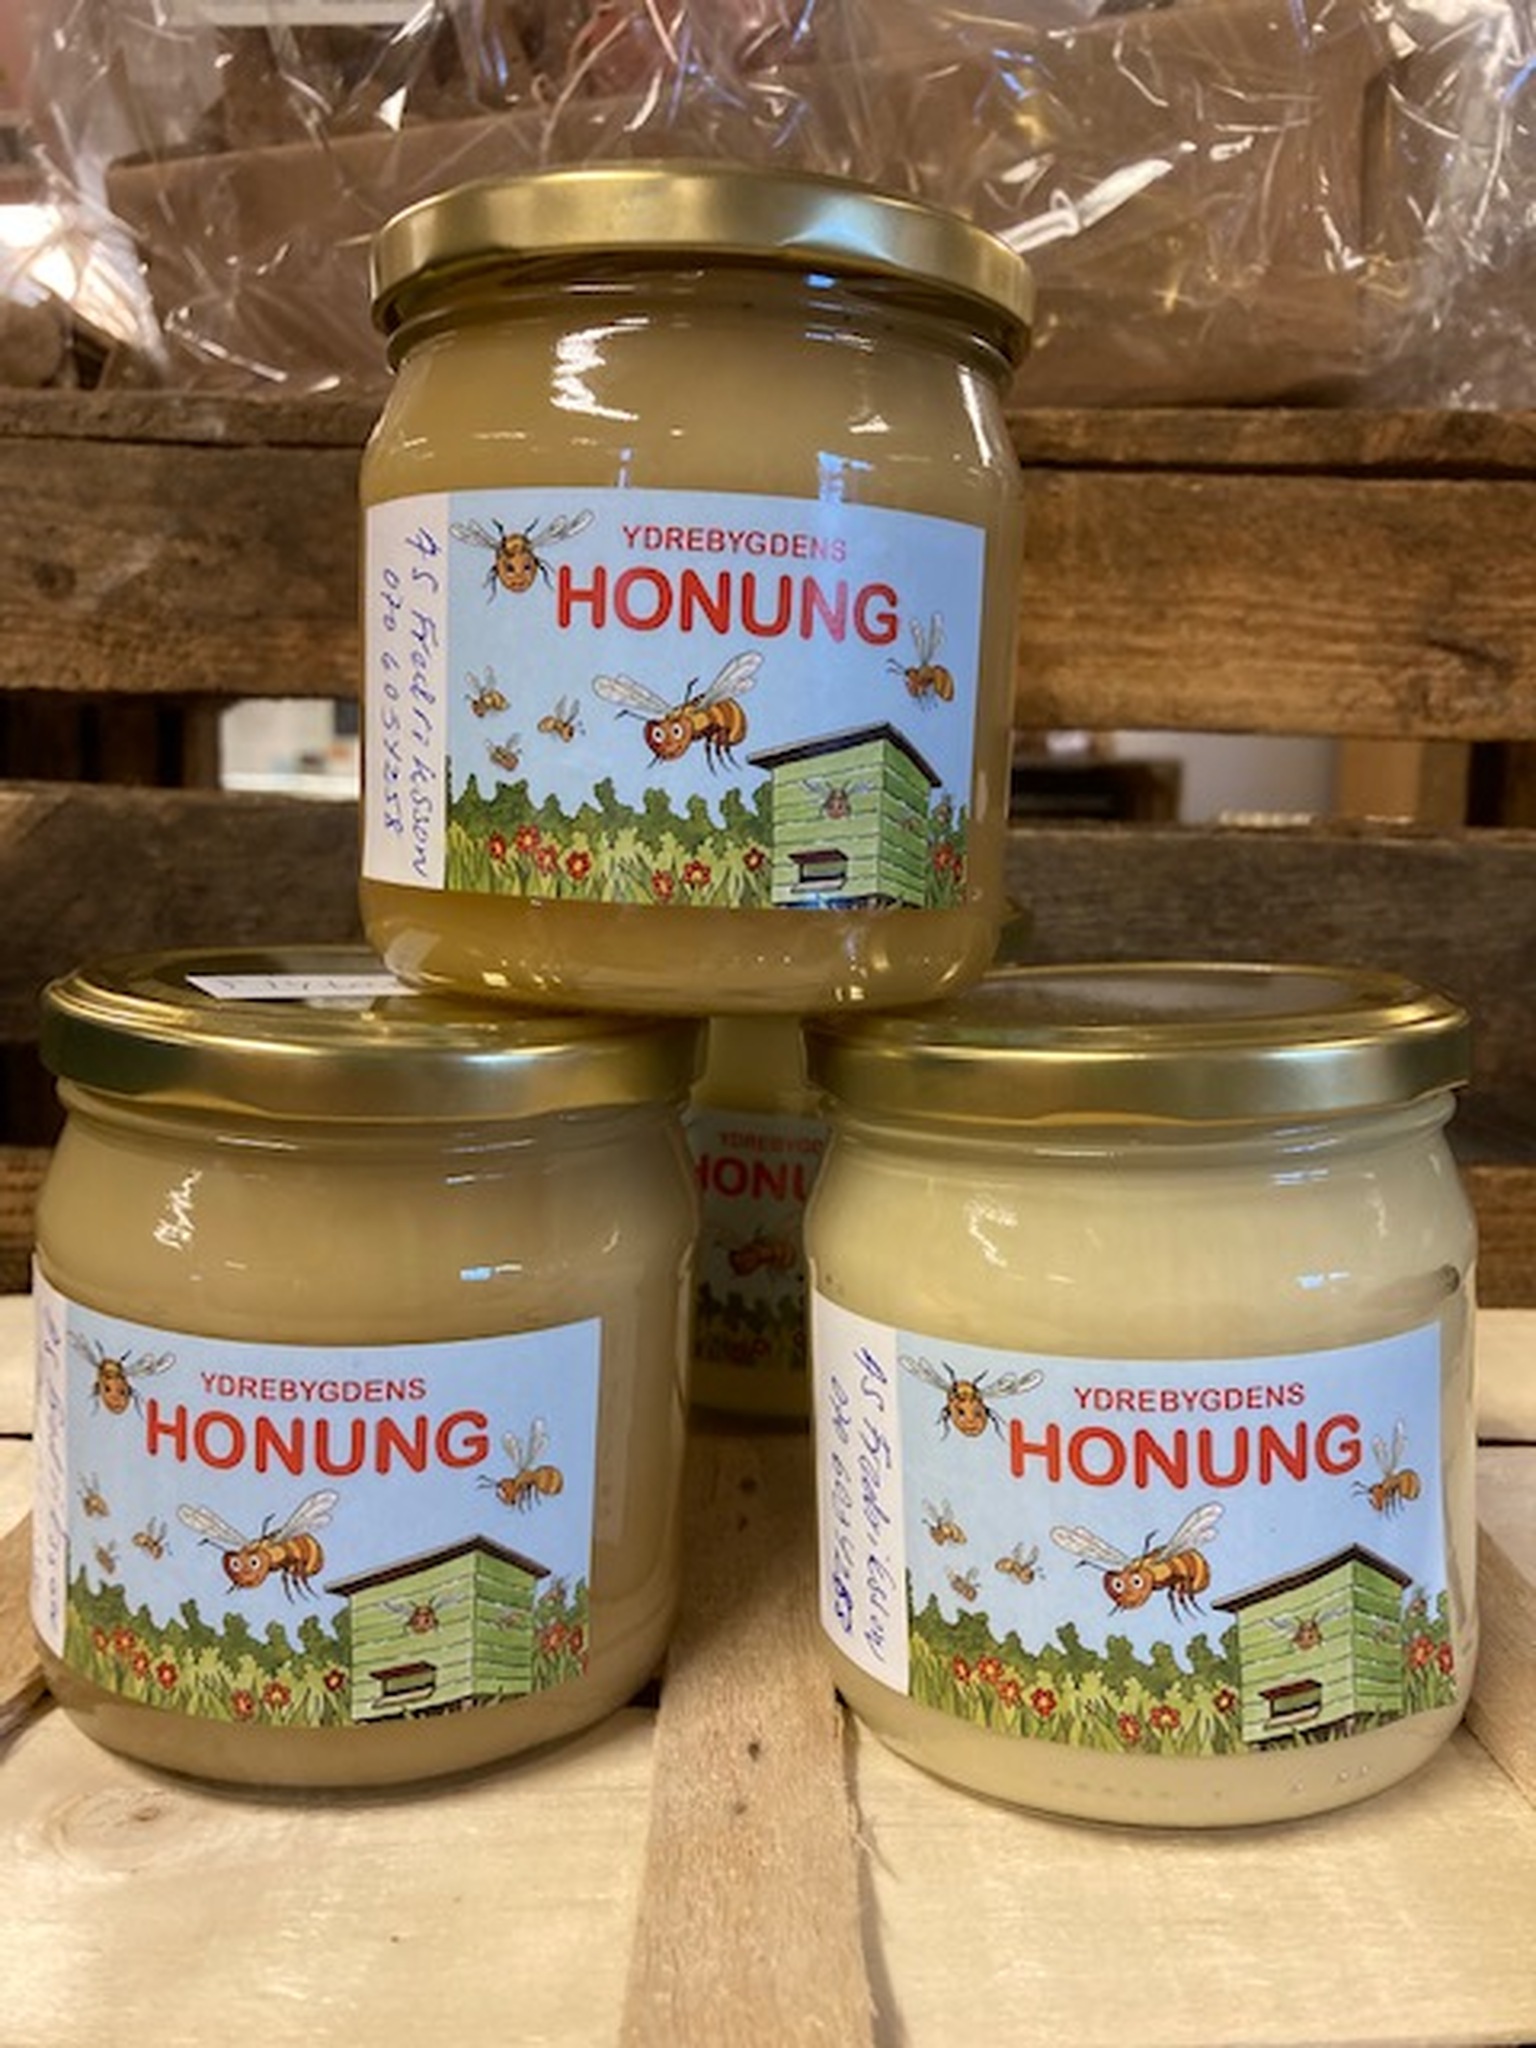 Lokalproducerad honung från Ydrebygden